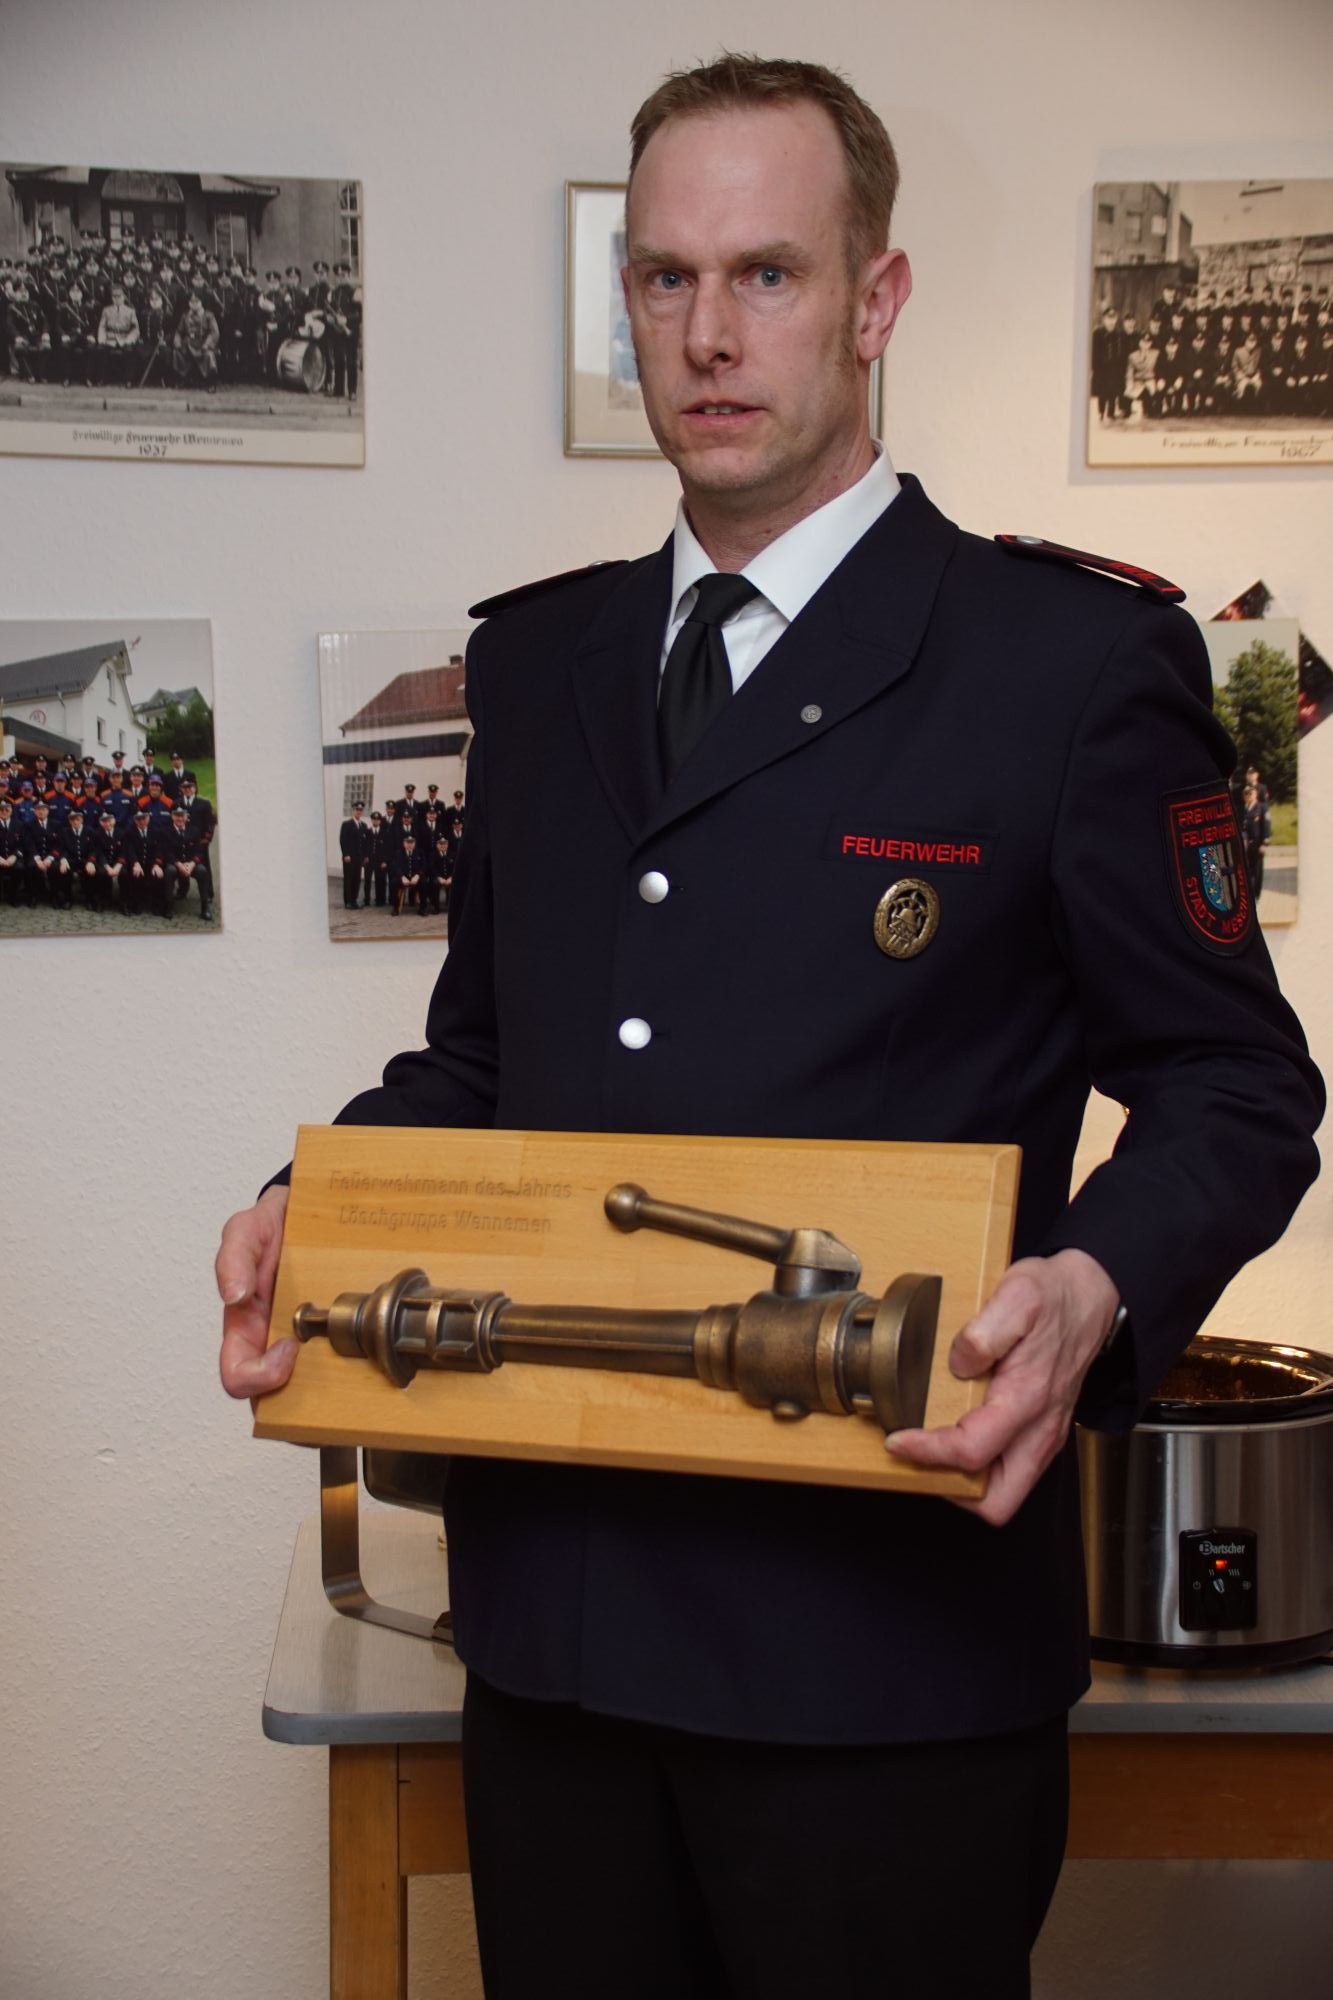 Feuerwehrmann des Jahres 2022 wurde Volker Kramer